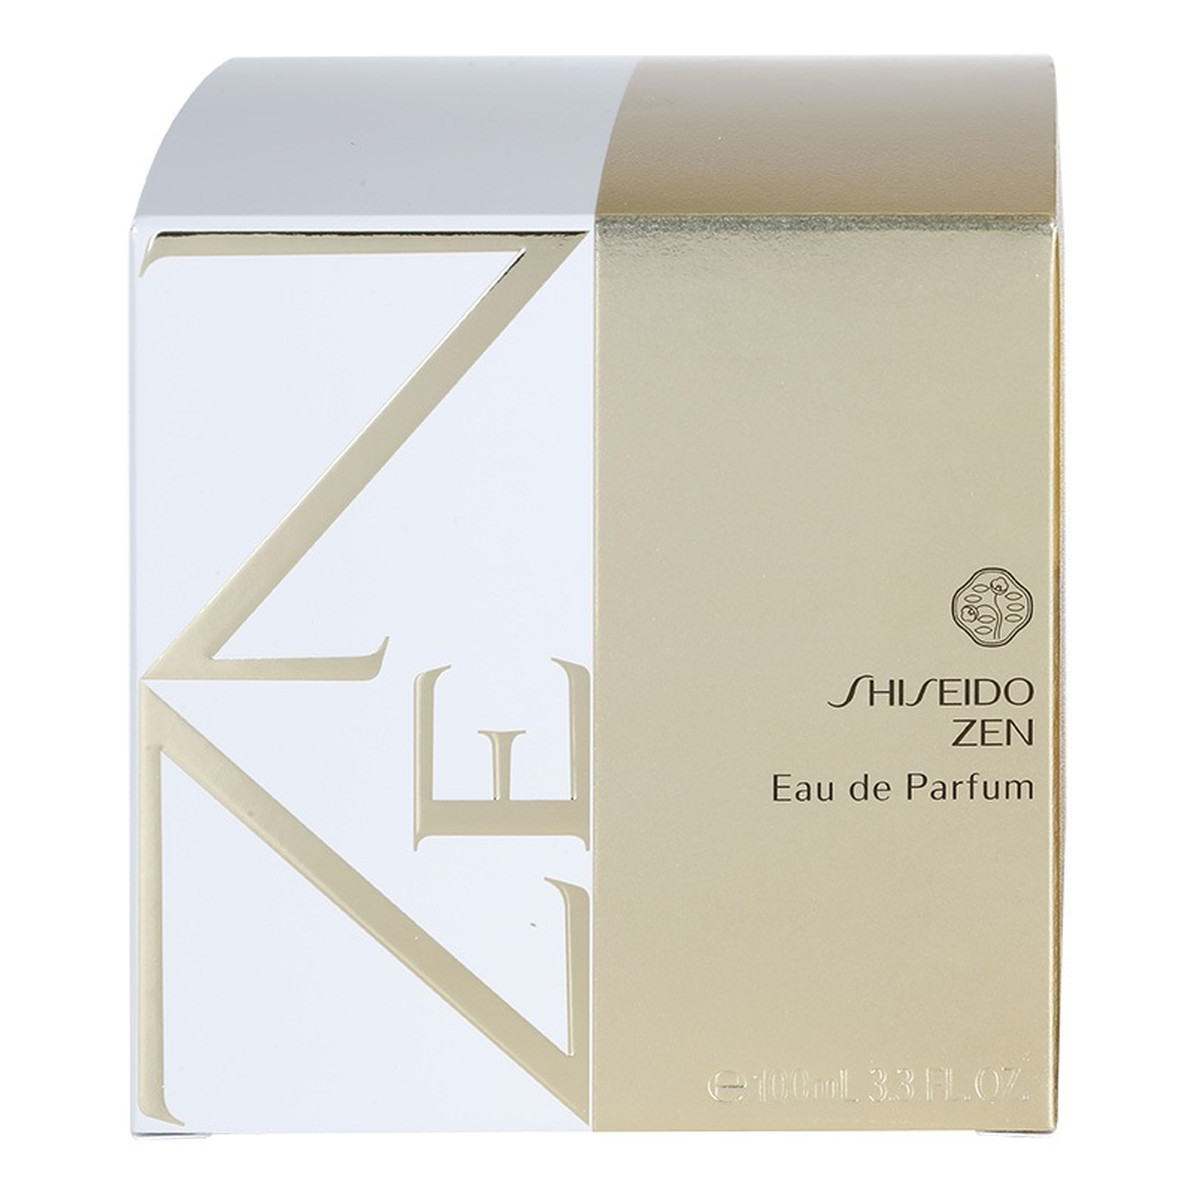 Shiseido Zen woda perfumowana dla kobiet 100ml